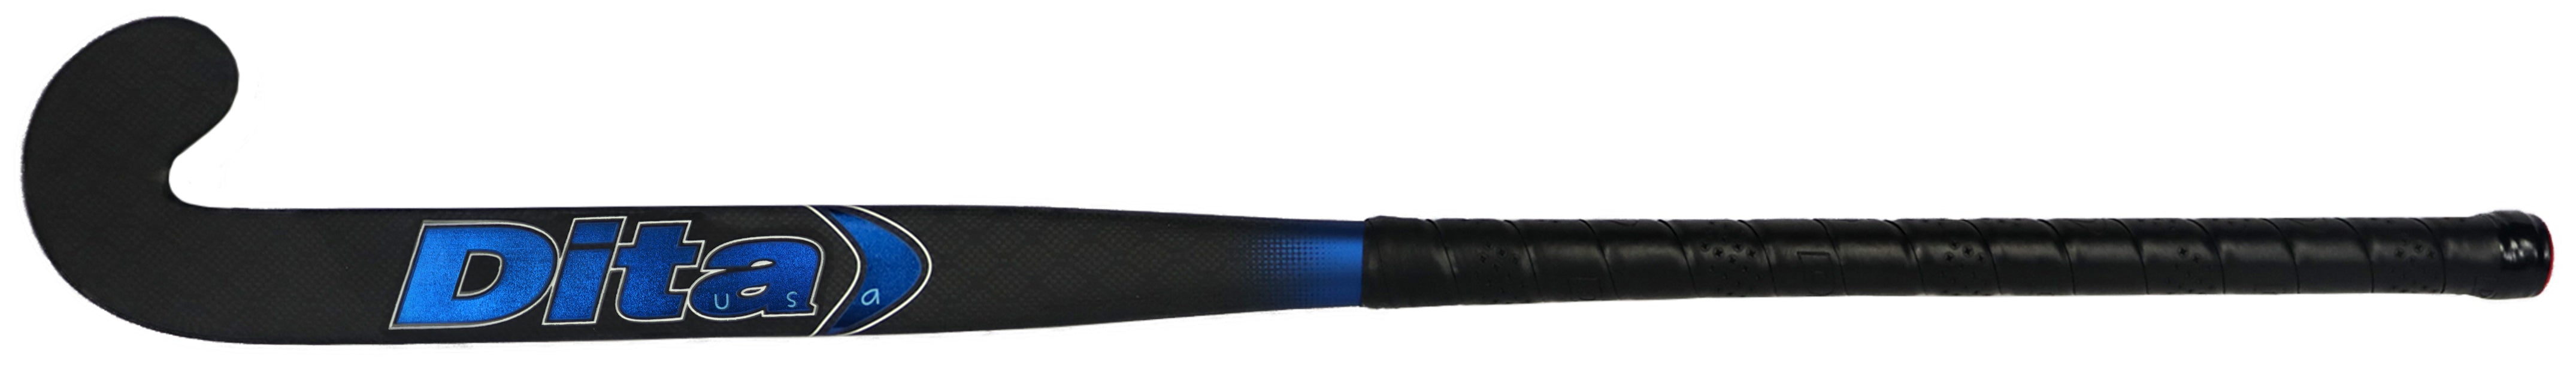 Dita USA C90 Blue - For 3D Skills, Drag Flicks